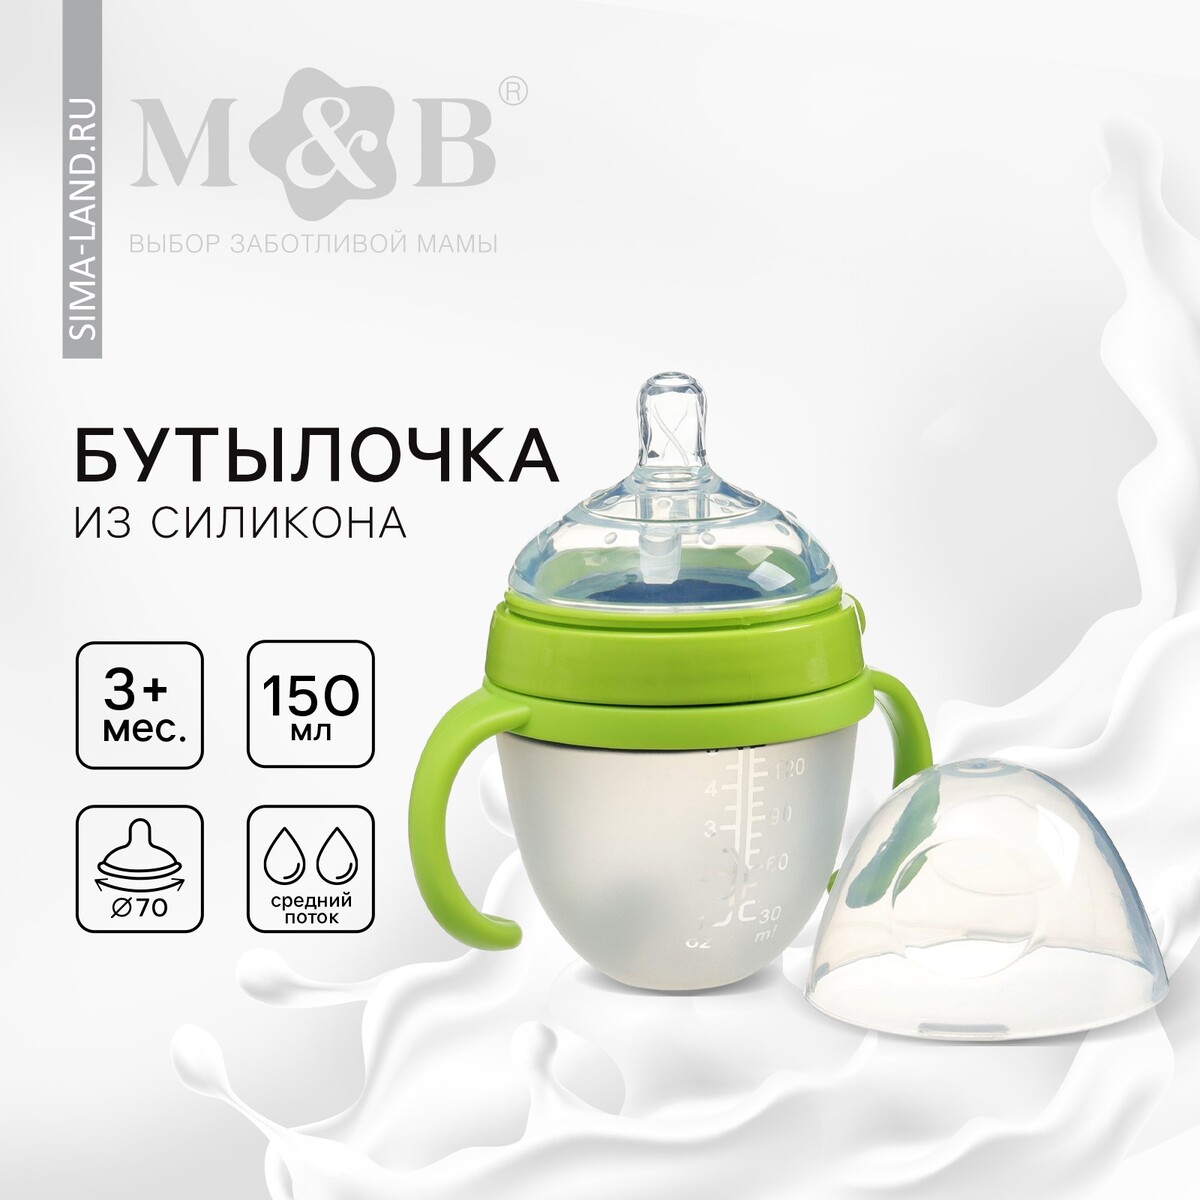 Бутылочка для кормления m&b, шг ø70мм, 150мл., с ручками, силиконовая колба, цвет зеленый Mum&Baby